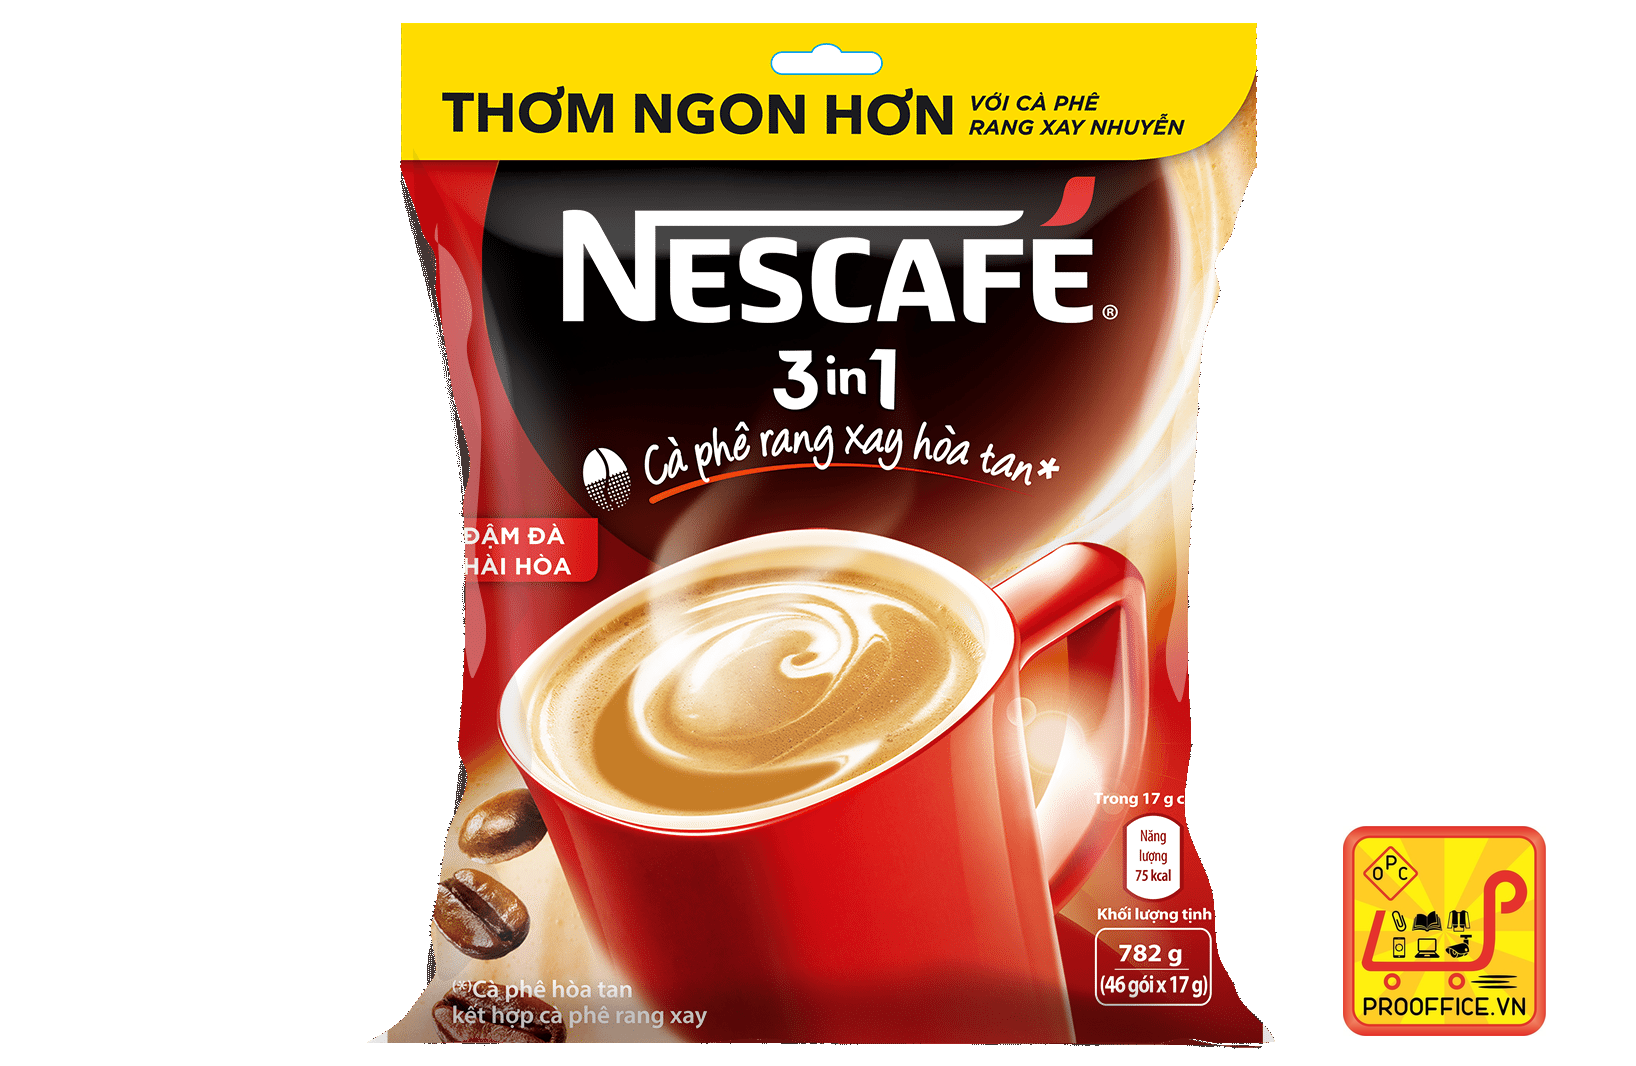 Cà phê Sữa rang xay hòa tan , Nescafé 3in1 đậm đà hài hòa  Bịch 46 gói x